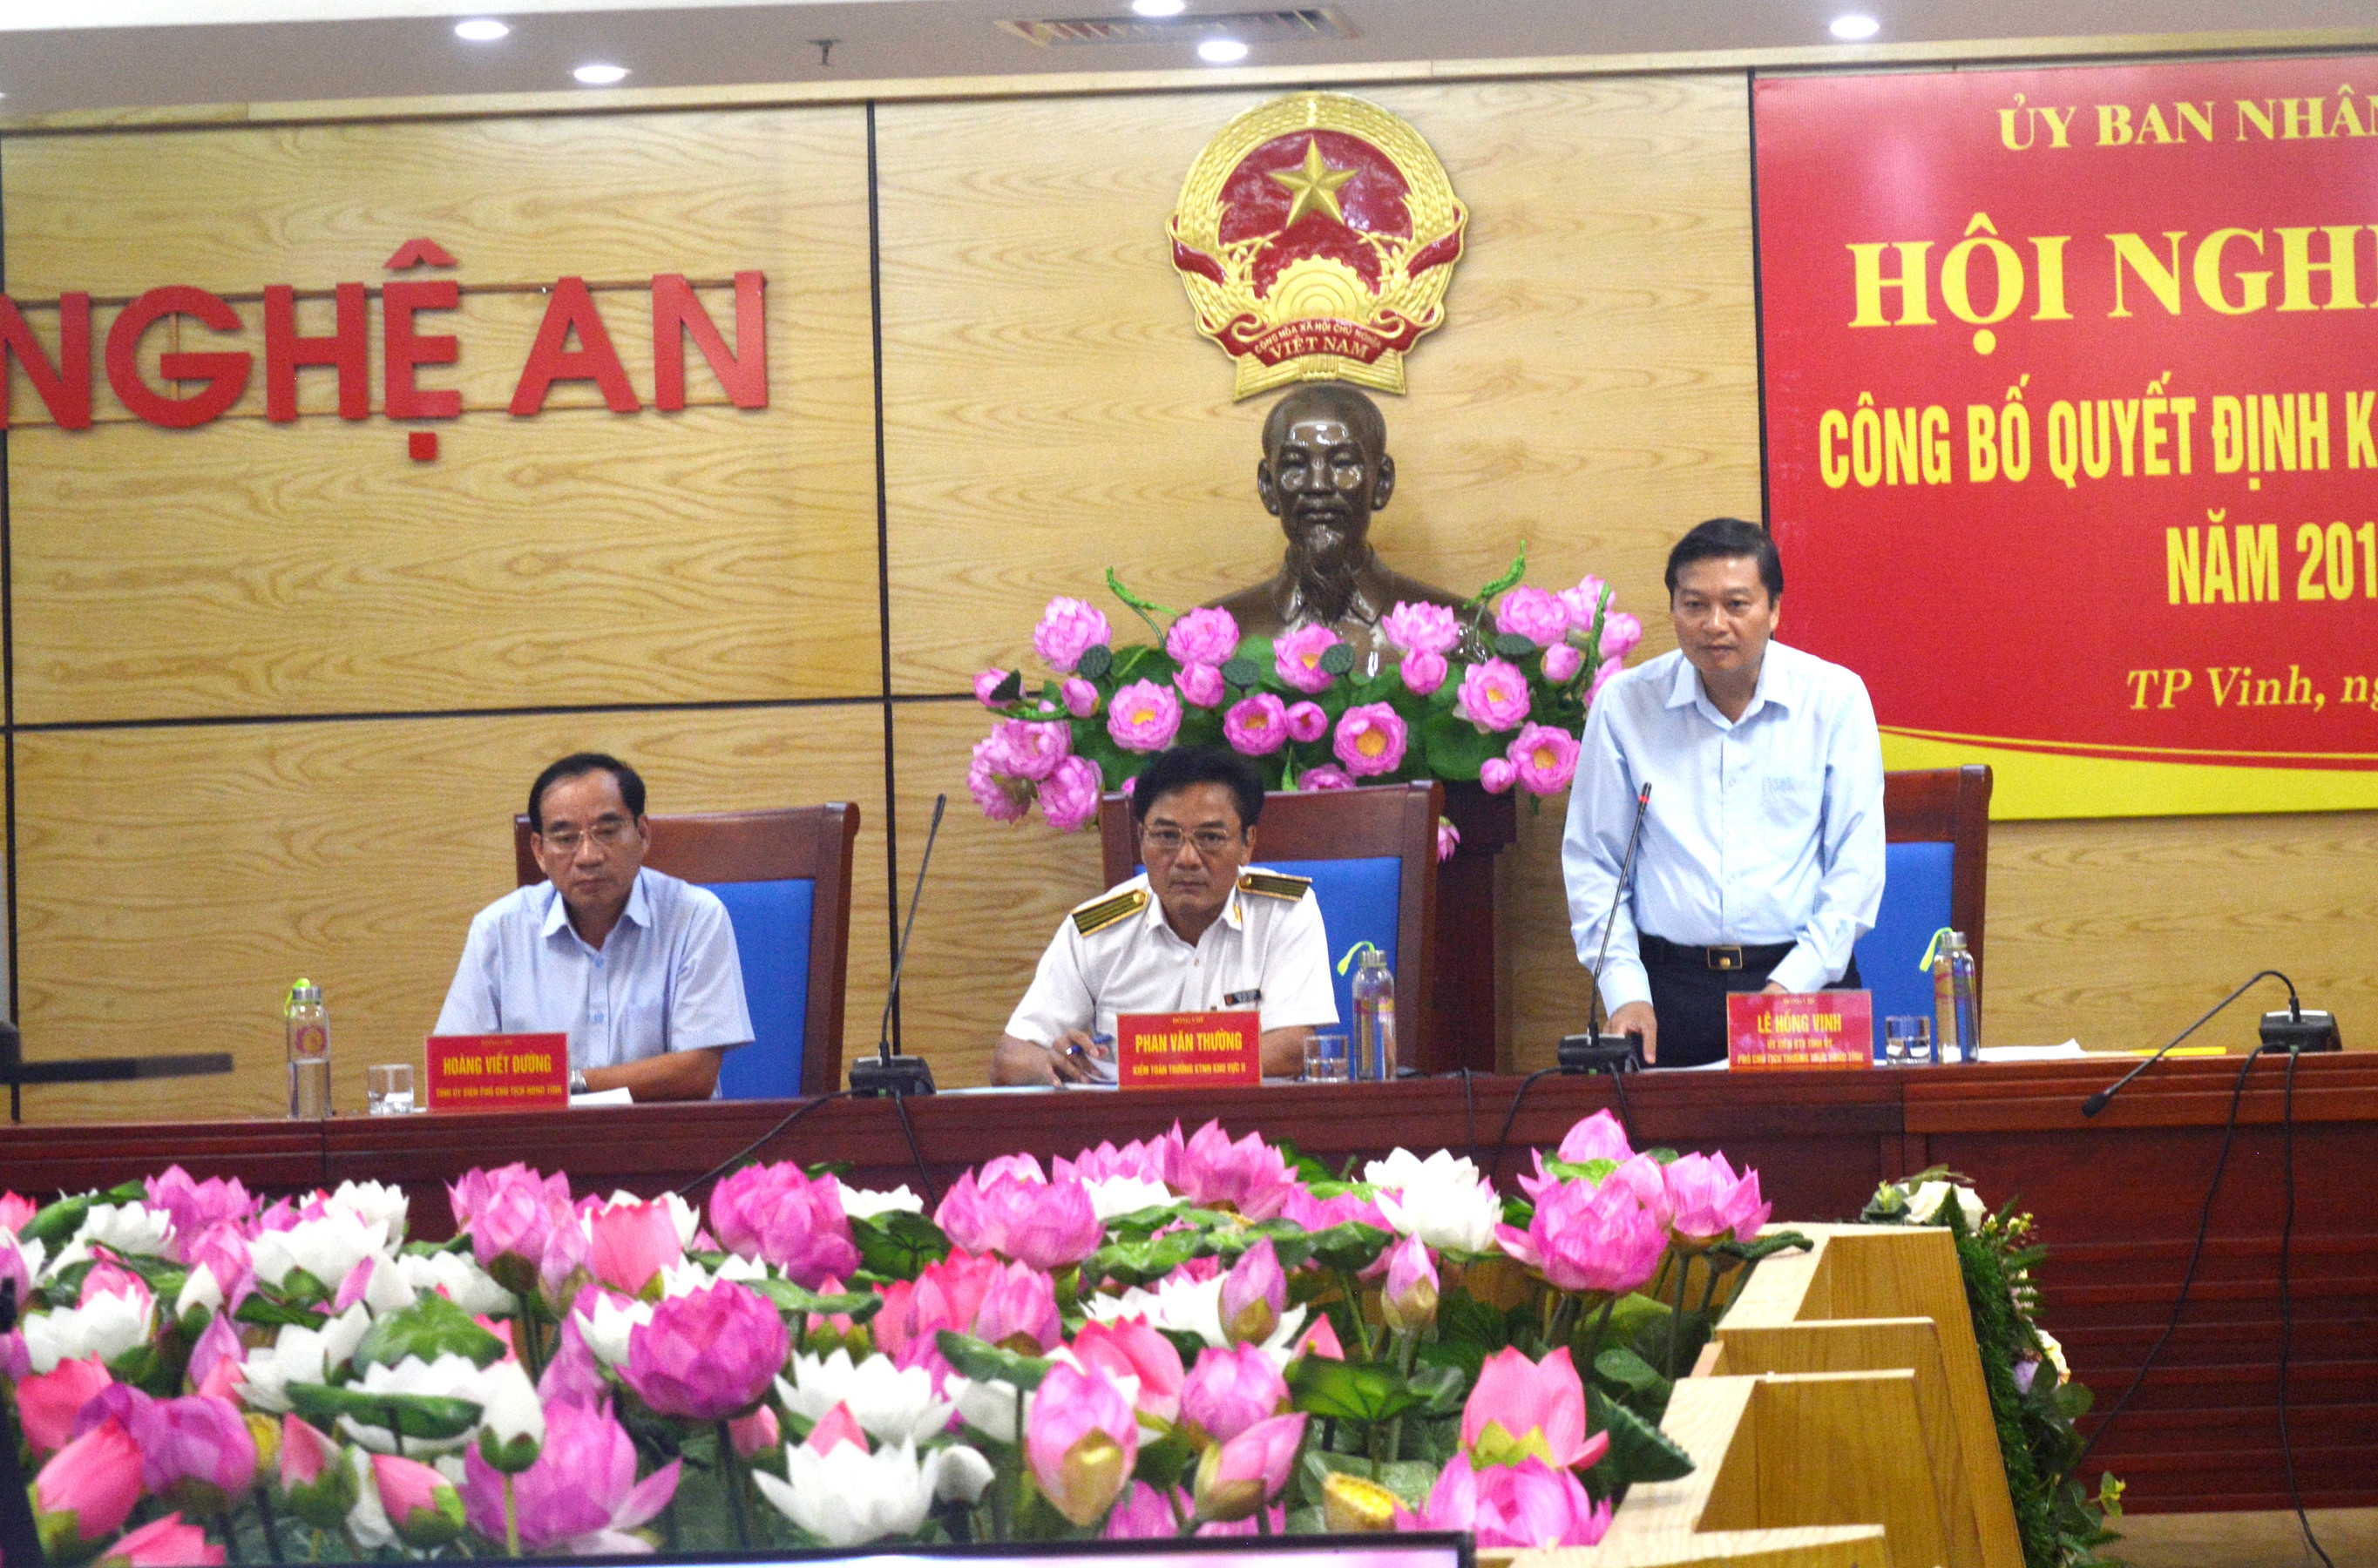 Đồng chí Lê Hồng Vinh, Ủy viên BTV Tỉnh ủy, Phó Chủ tịch Thường trực UBND tỉnh quán triệt một